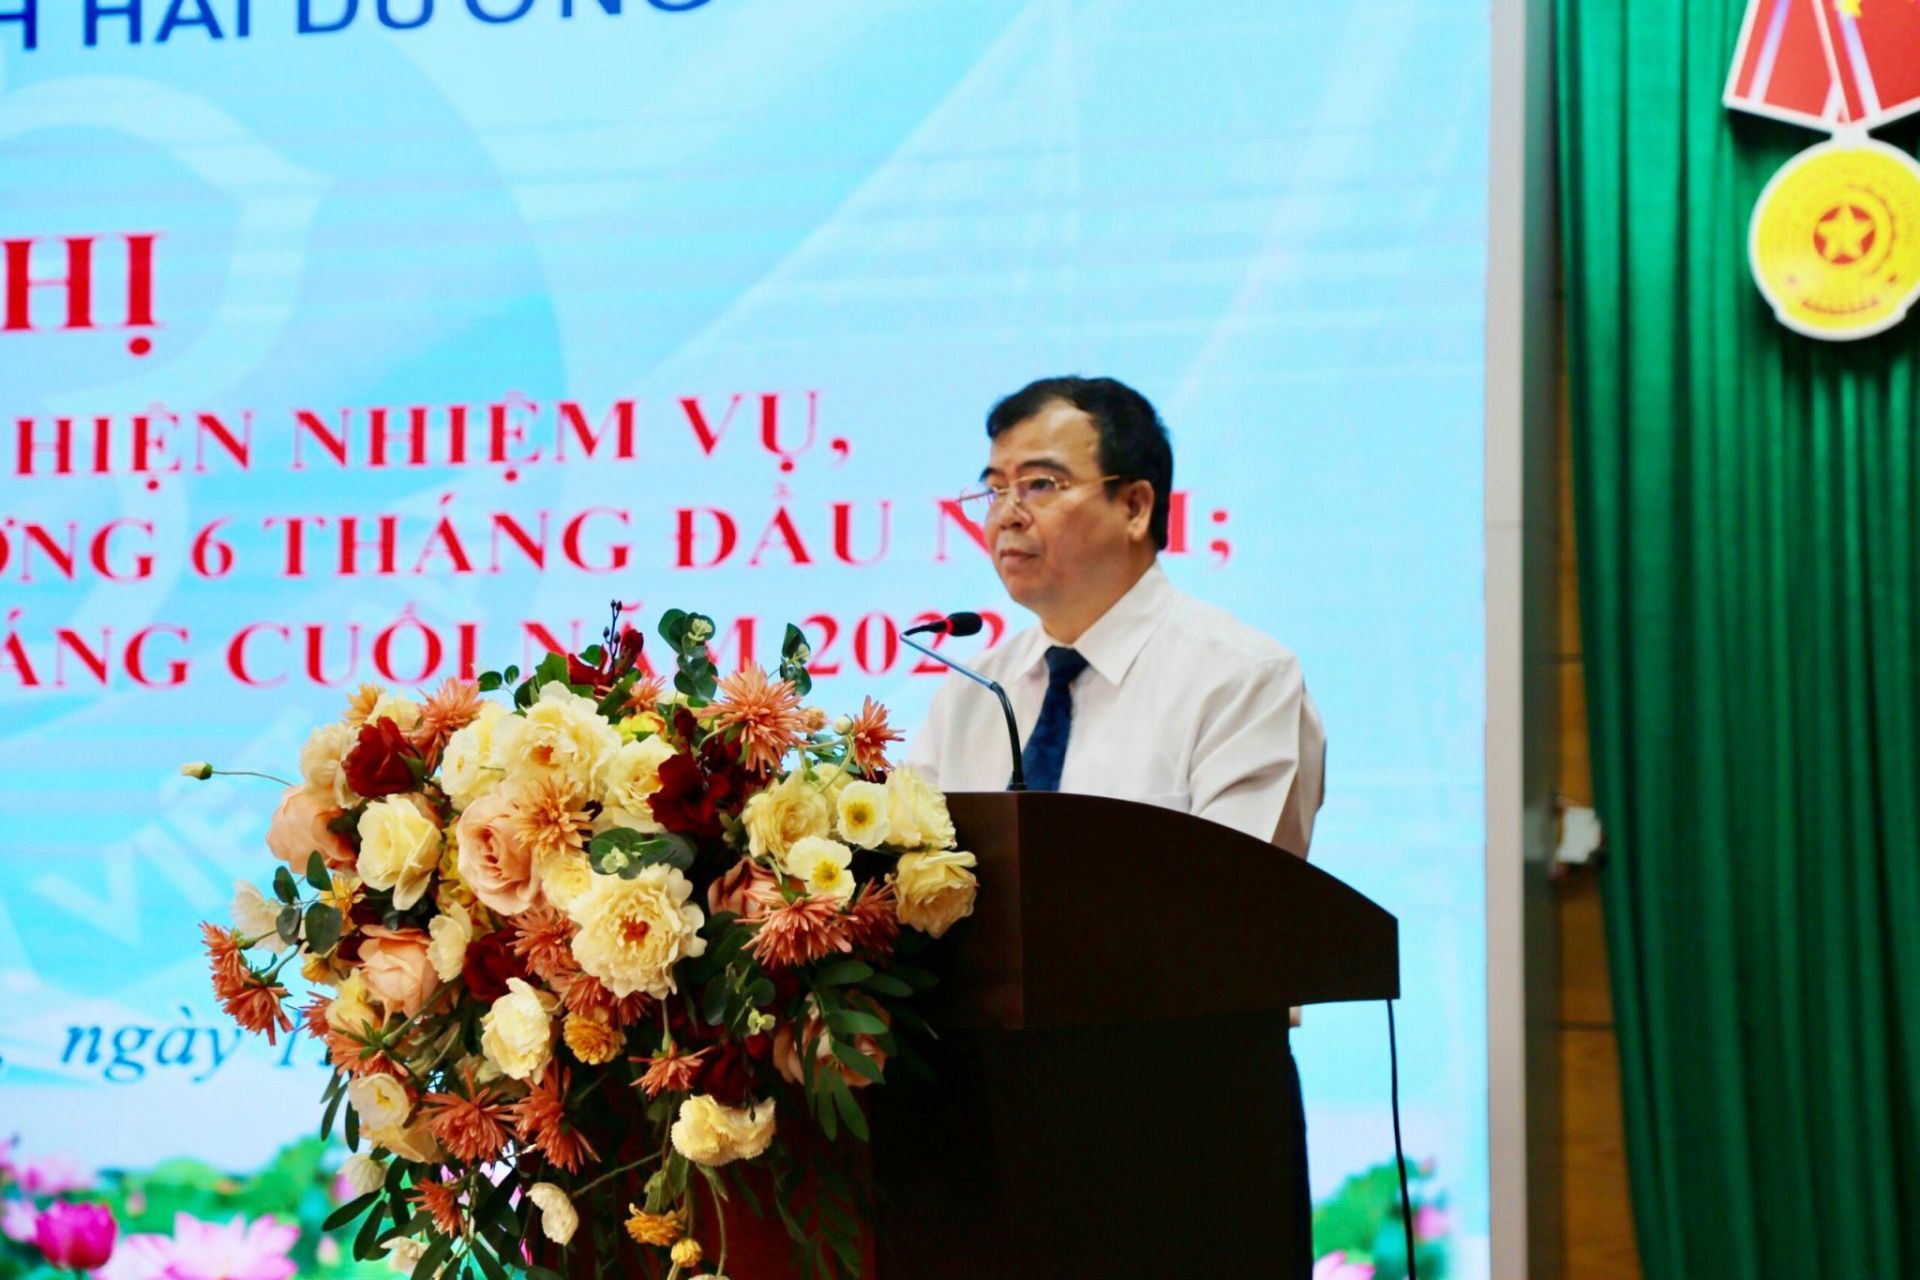 Ông Nguyễn Minh Hùng - Tỉnh ủy viên, Phó chủ tịch UBND tỉnh phát biểu chỉ đạo tại Hội nghị triển khai công tác BHXH, BHYT 6 tháng cuối năm tại BHXH tỉnh Hải Dương